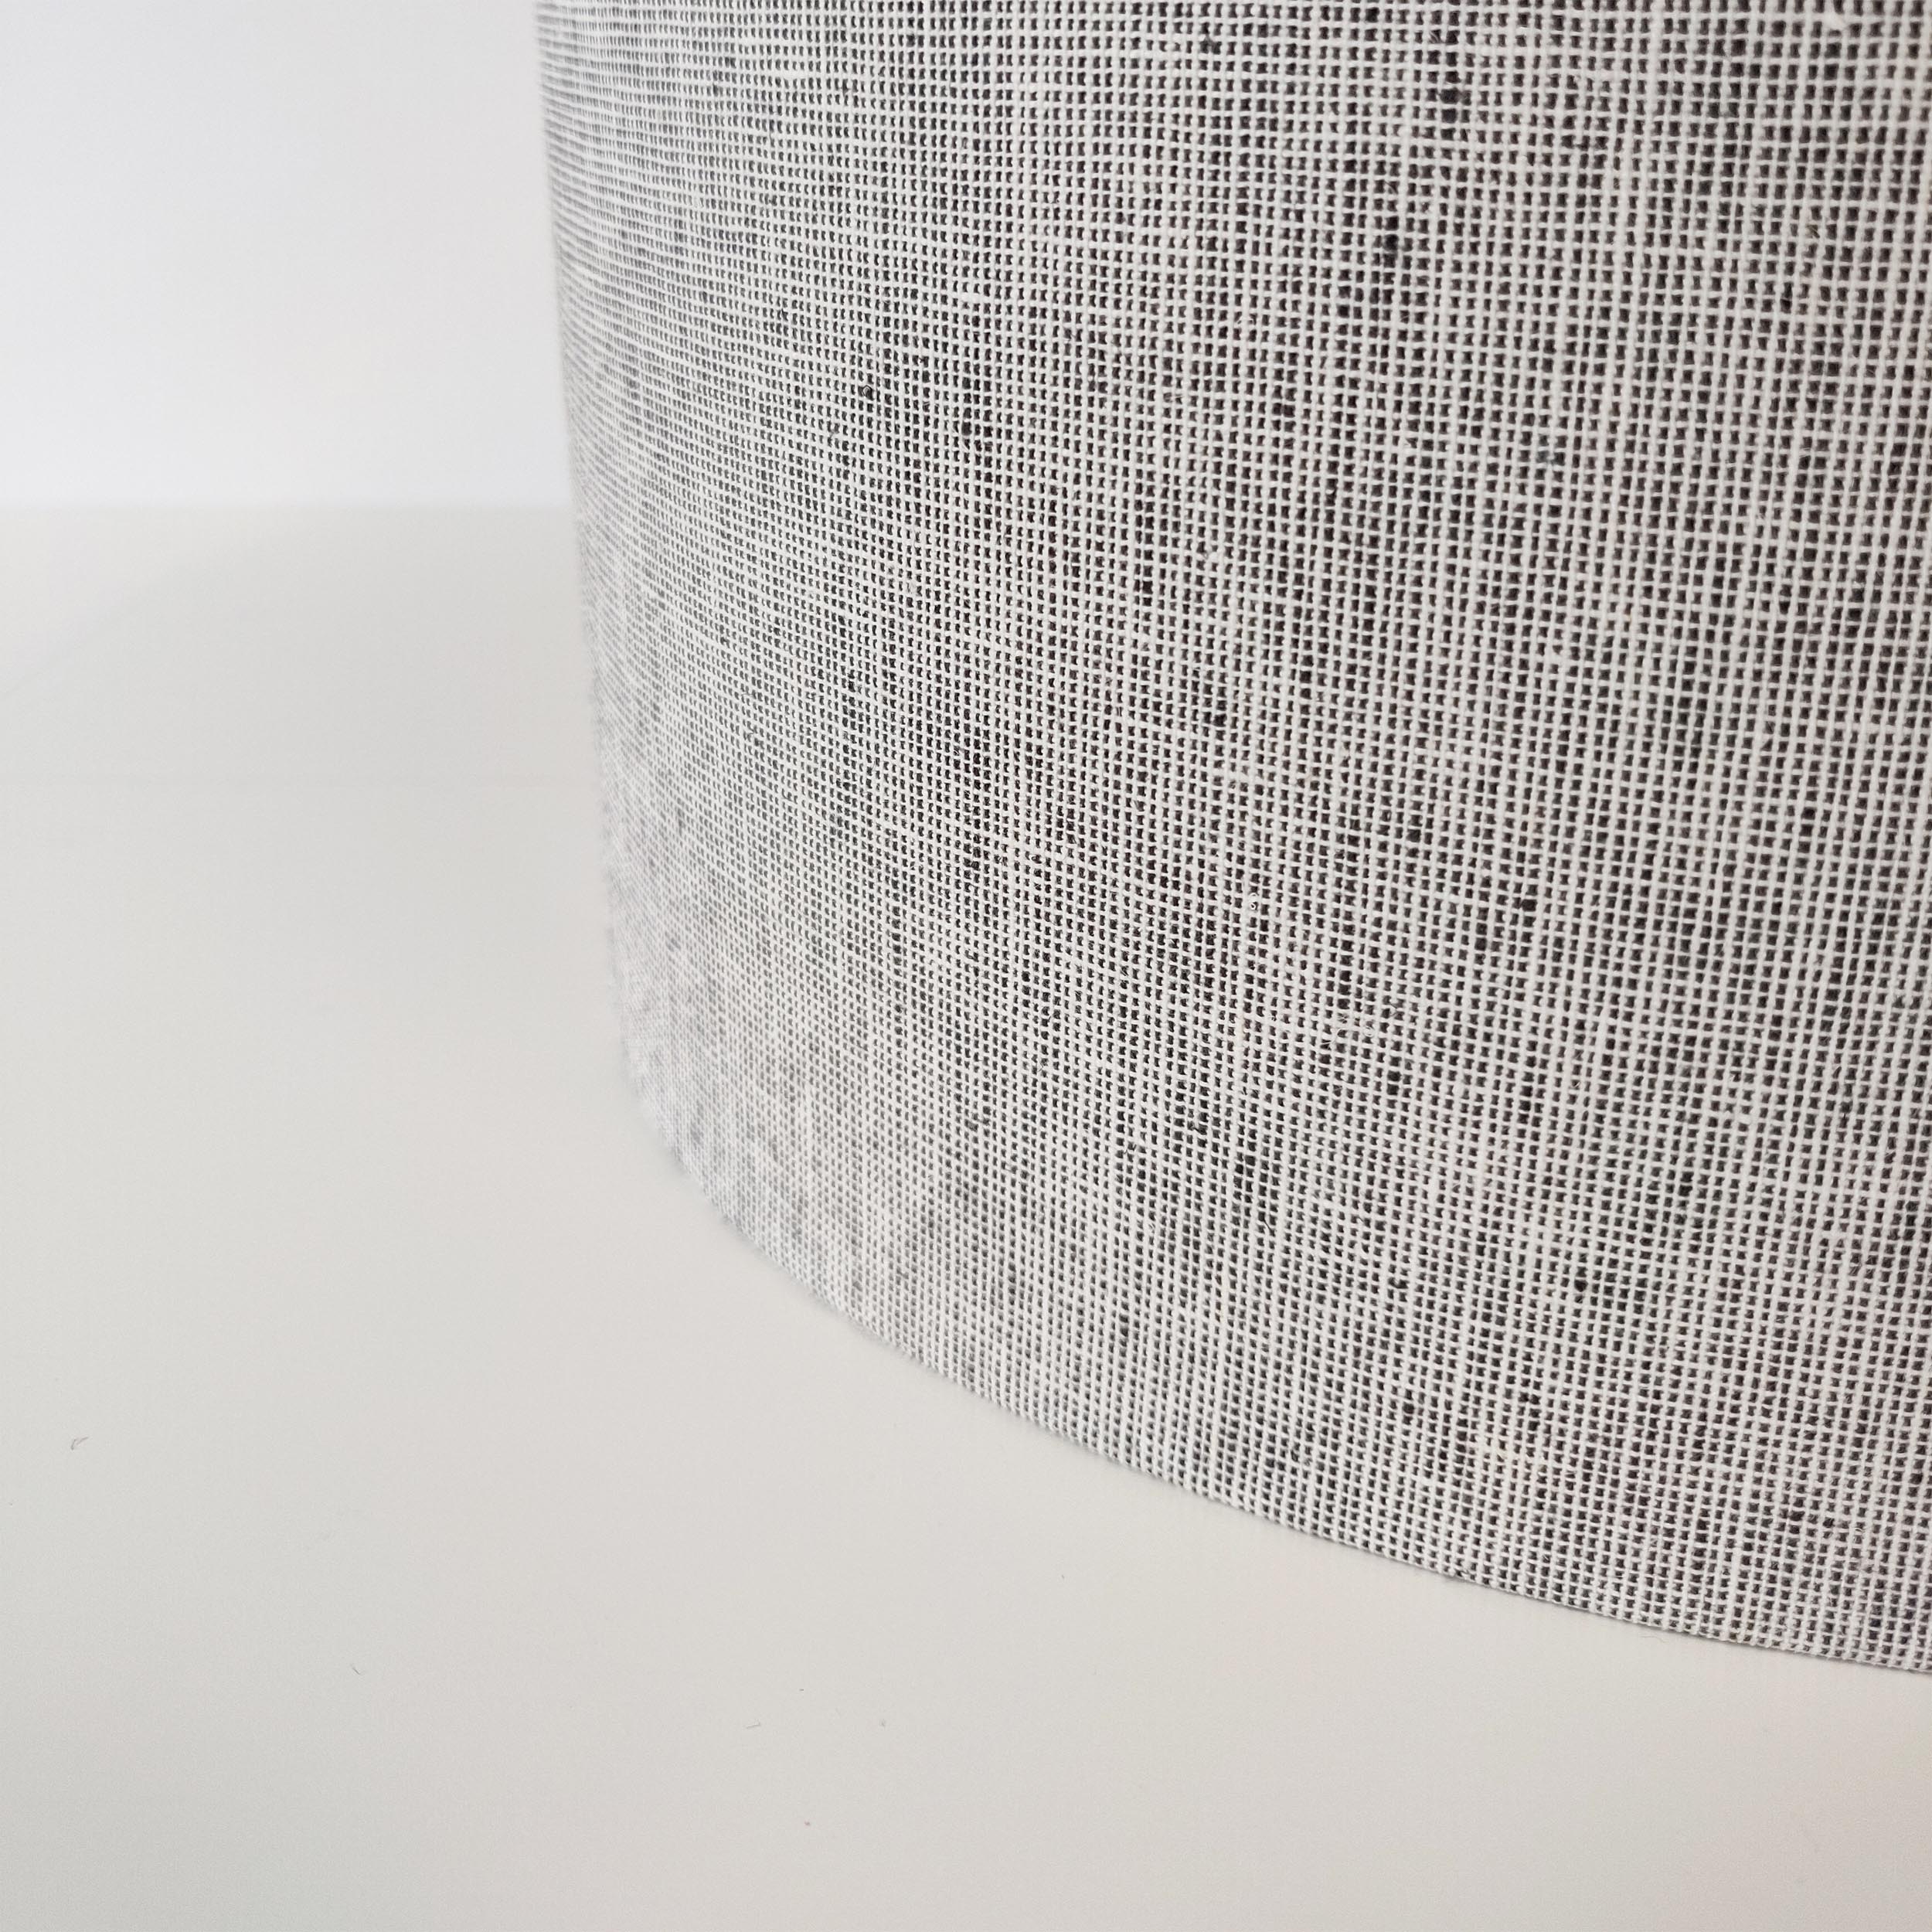 Textured Light Grey Homespun Lampshade